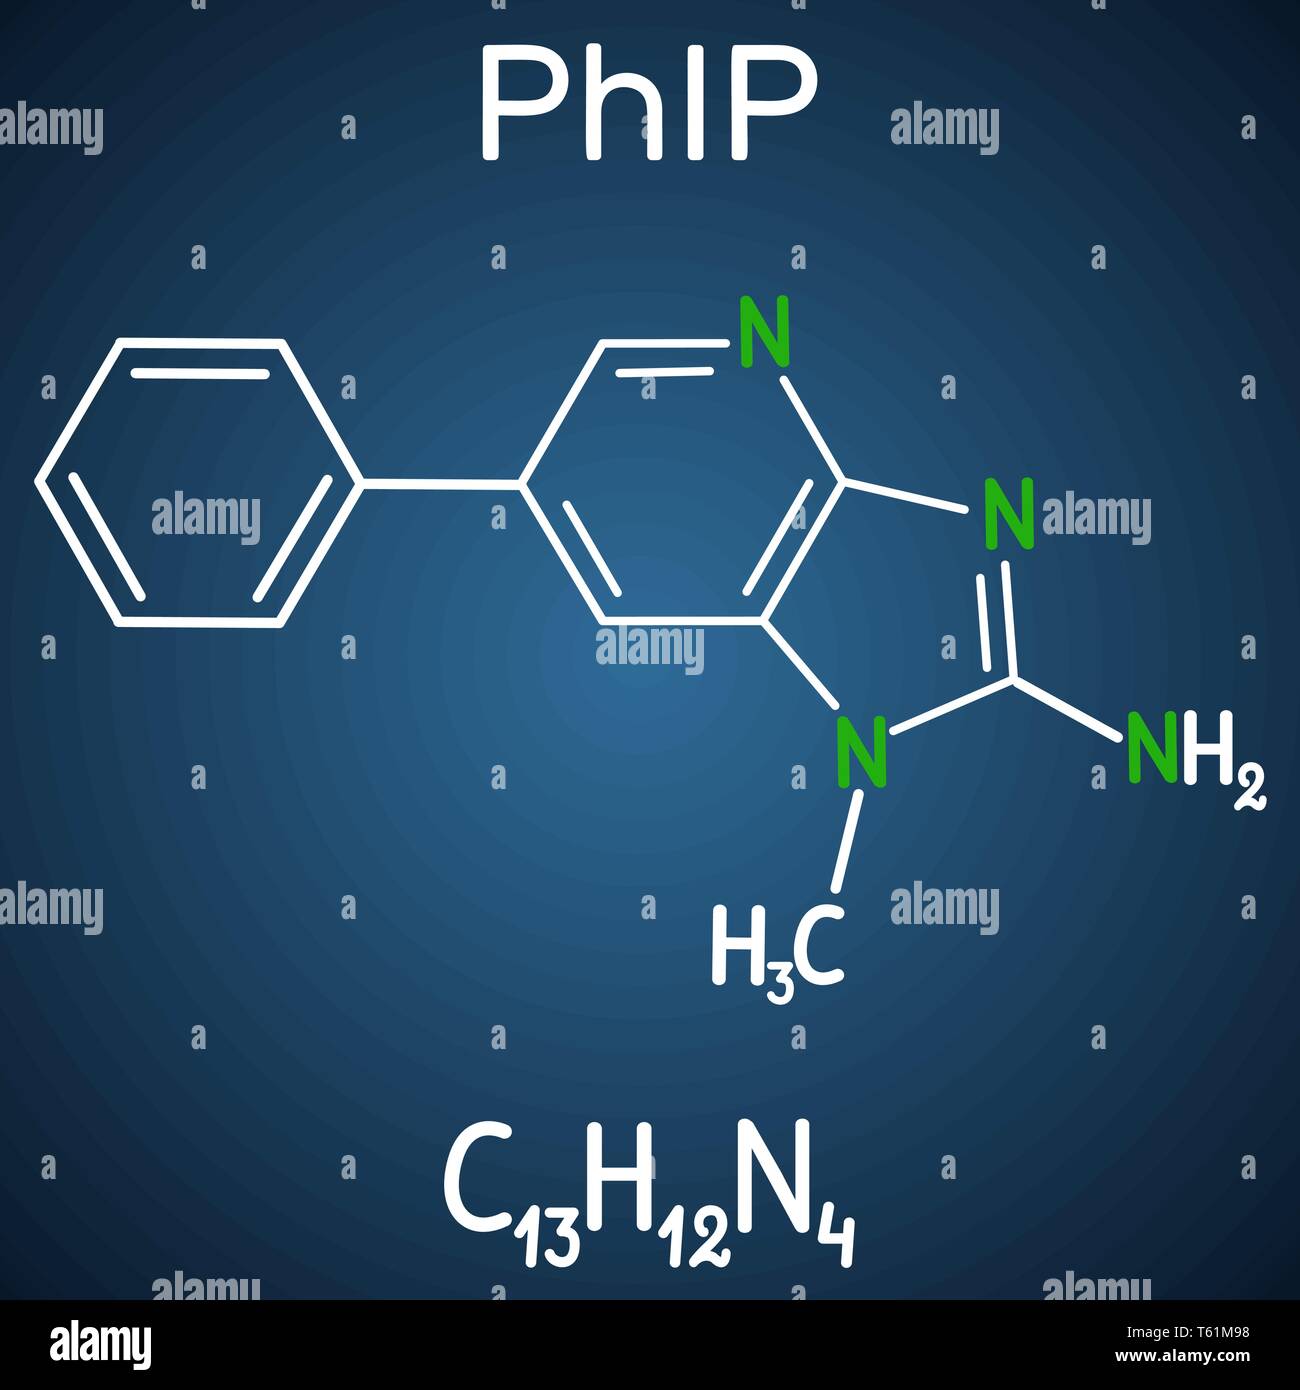 PhIP ( 2-amino-1-méthyl-6-phenylimidazo(4,5-b)pyridine) molécule. Formule chimique et structurale de la molécule modèle fond bleu foncé. Je vecteur Illustration de Vecteur